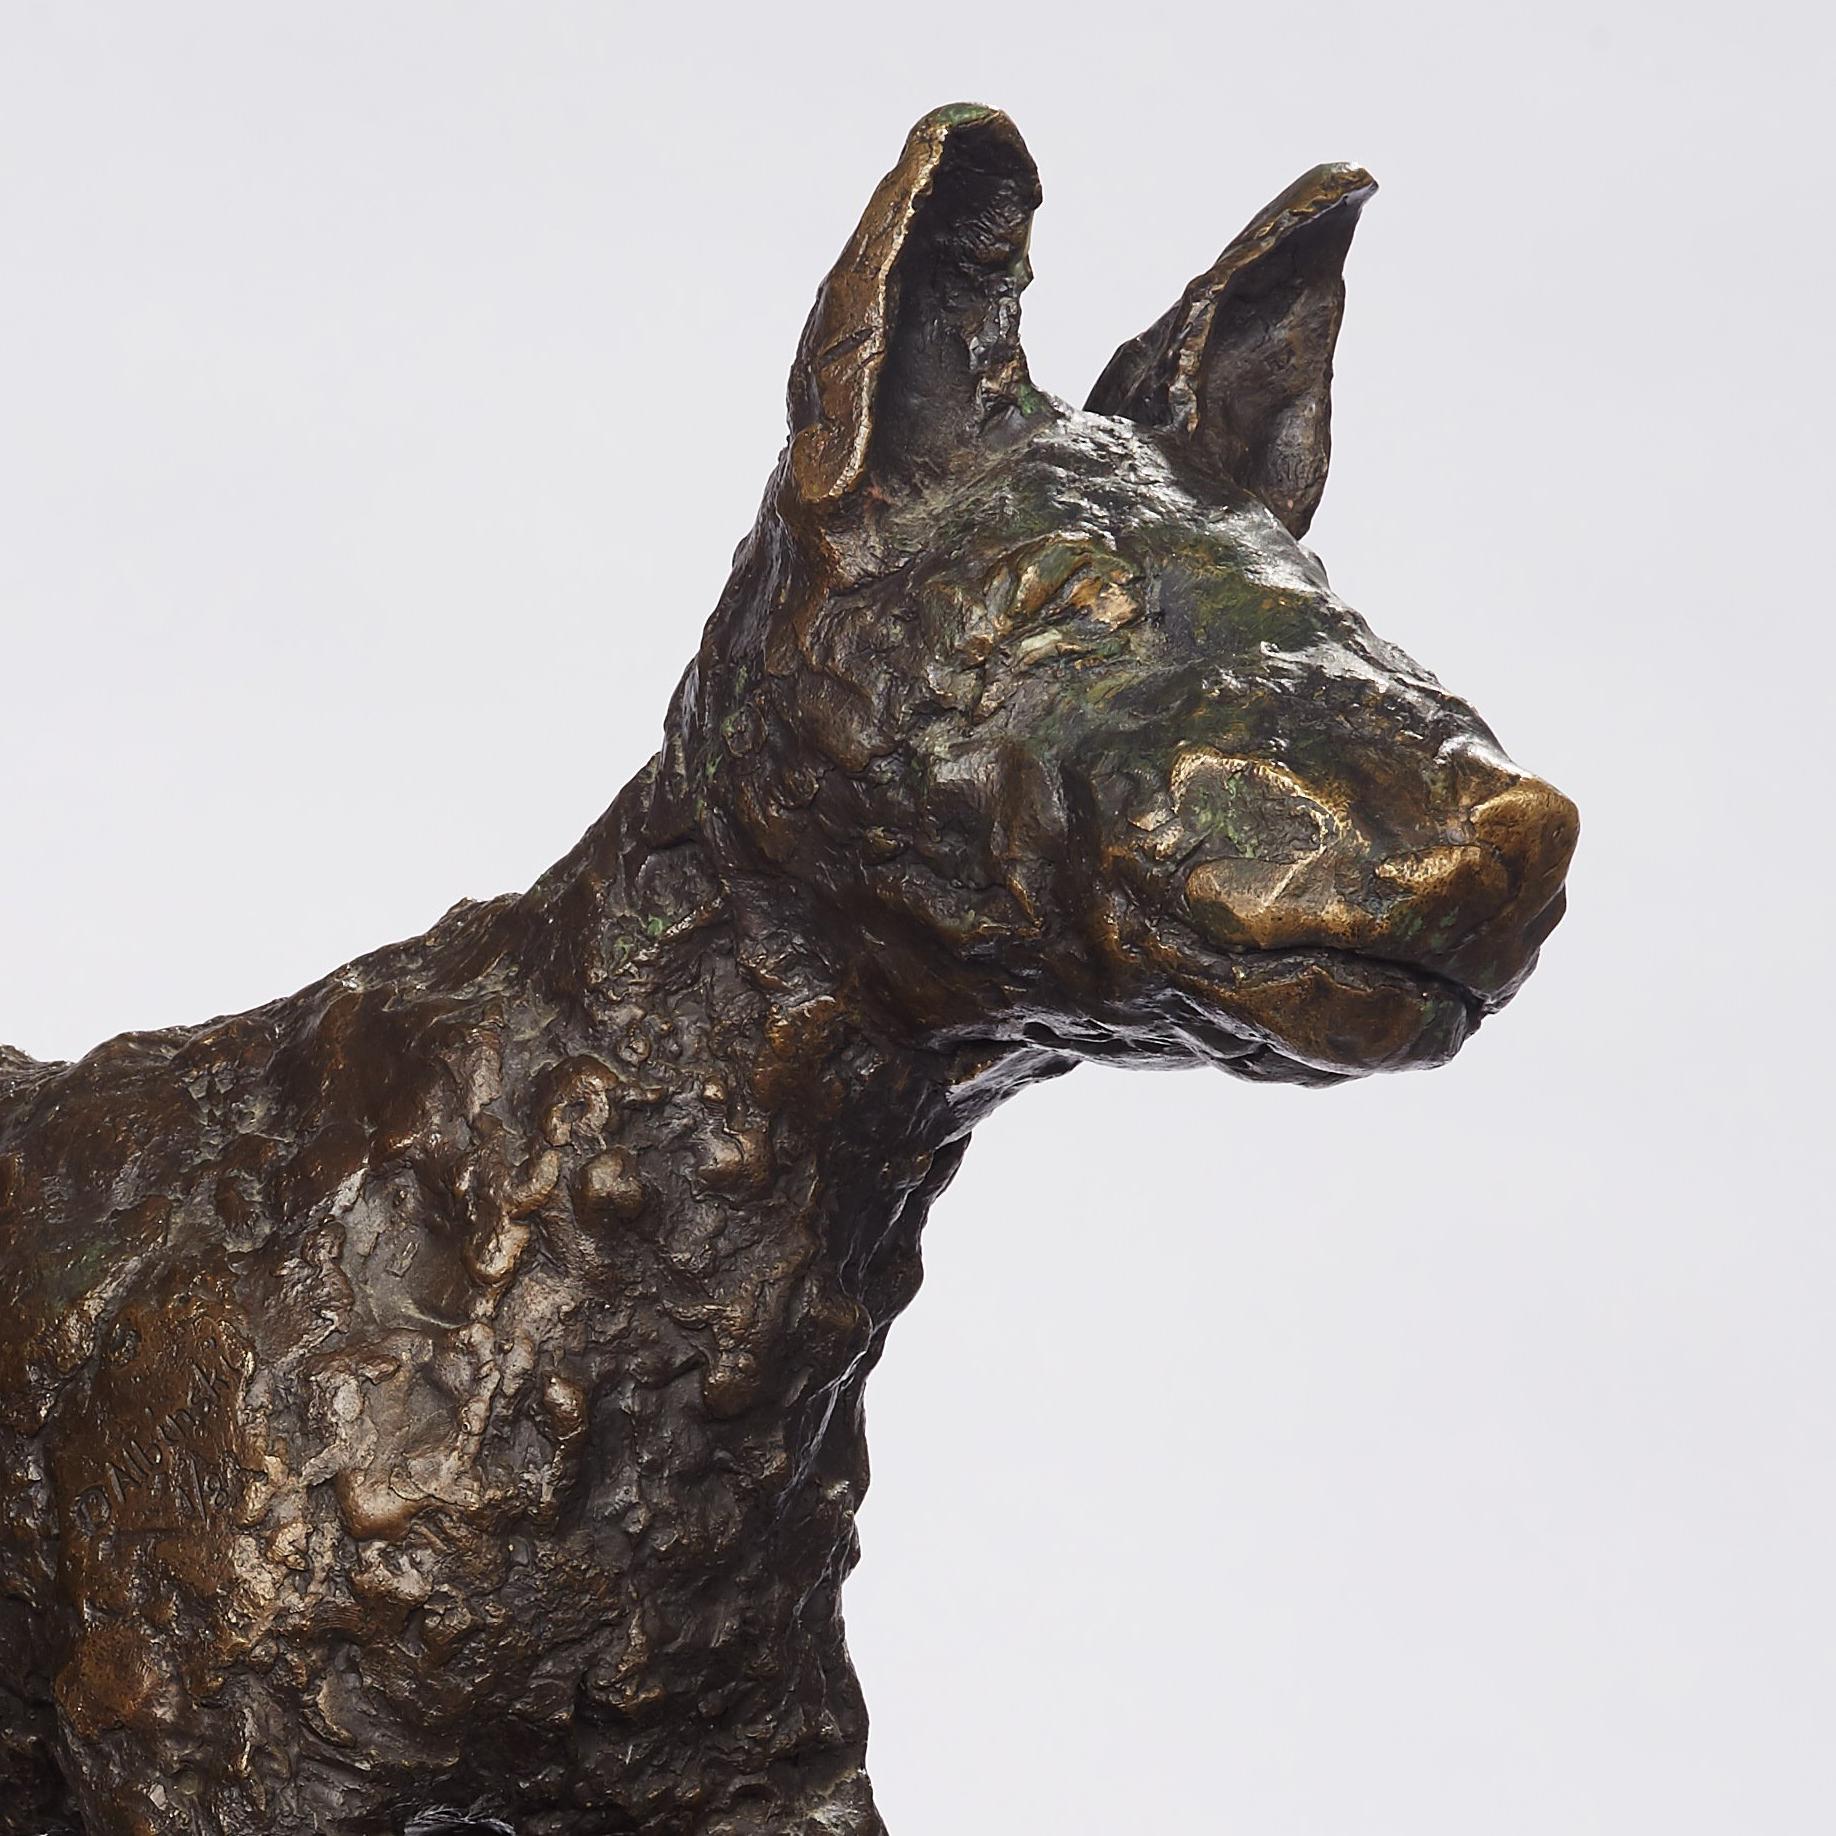 Polnische modernistische PUPPY DOG Bronze-Skulptur des Expressionismus – Sculpture von Dominik Albinski